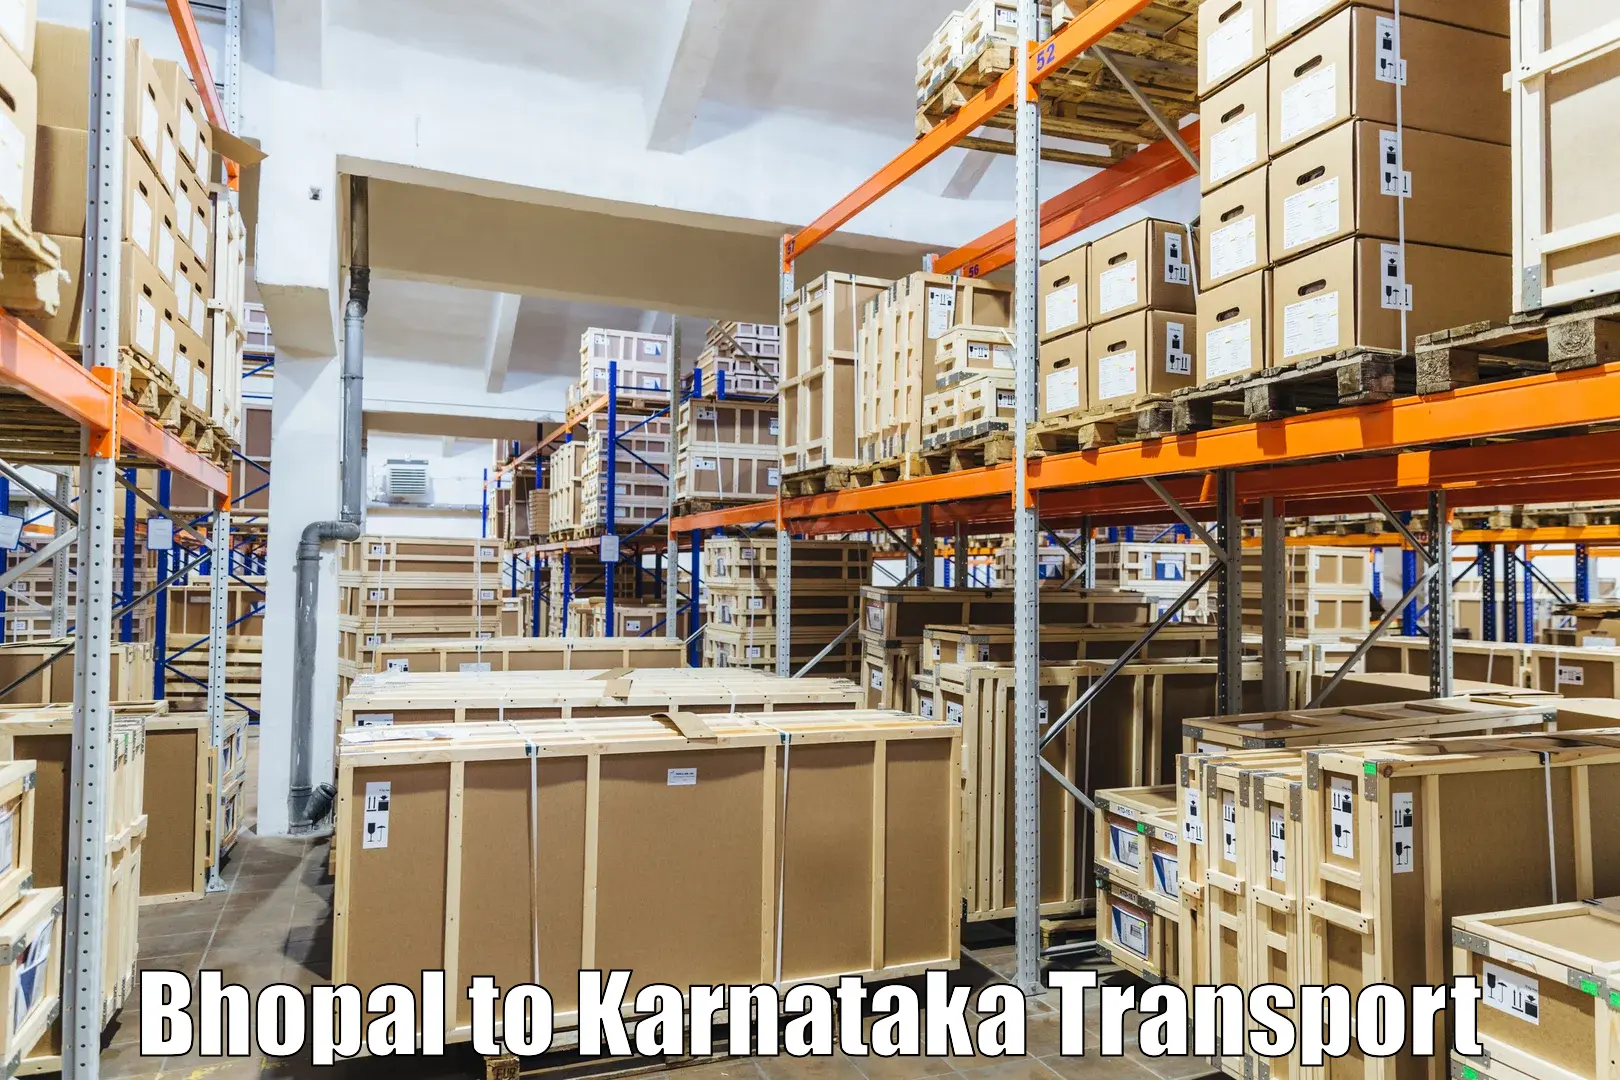 Pick up transport service Bhopal to Chikkamagaluru